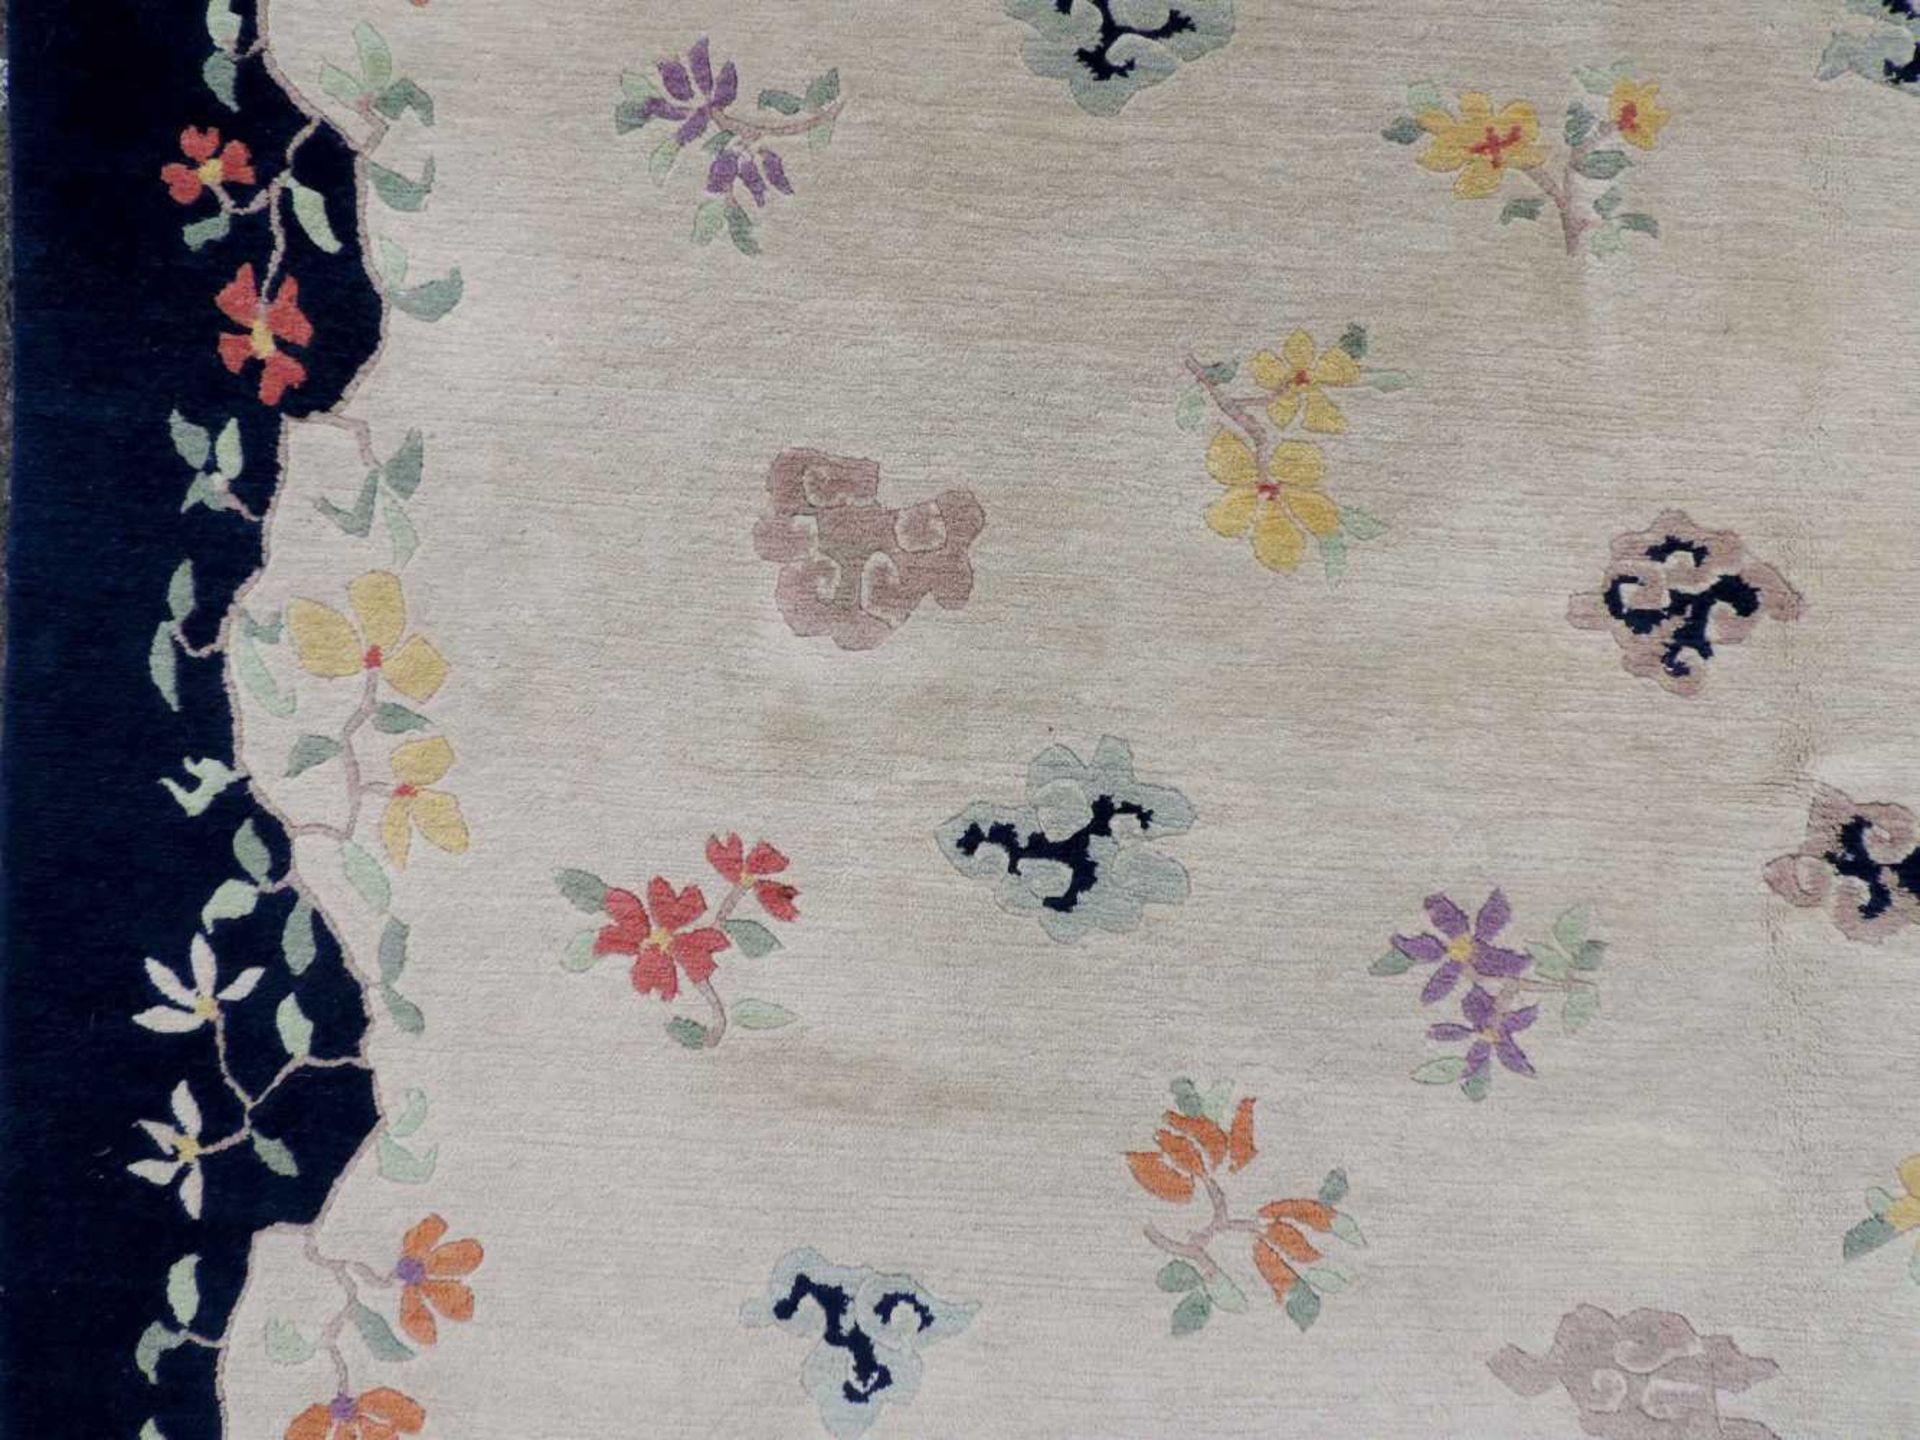 Blütenteppich China. 245 cm x 167 cm. Handgeknüpft, Wolle auf Baumwolle. Blossoms carpet China. - Bild 2 aus 12